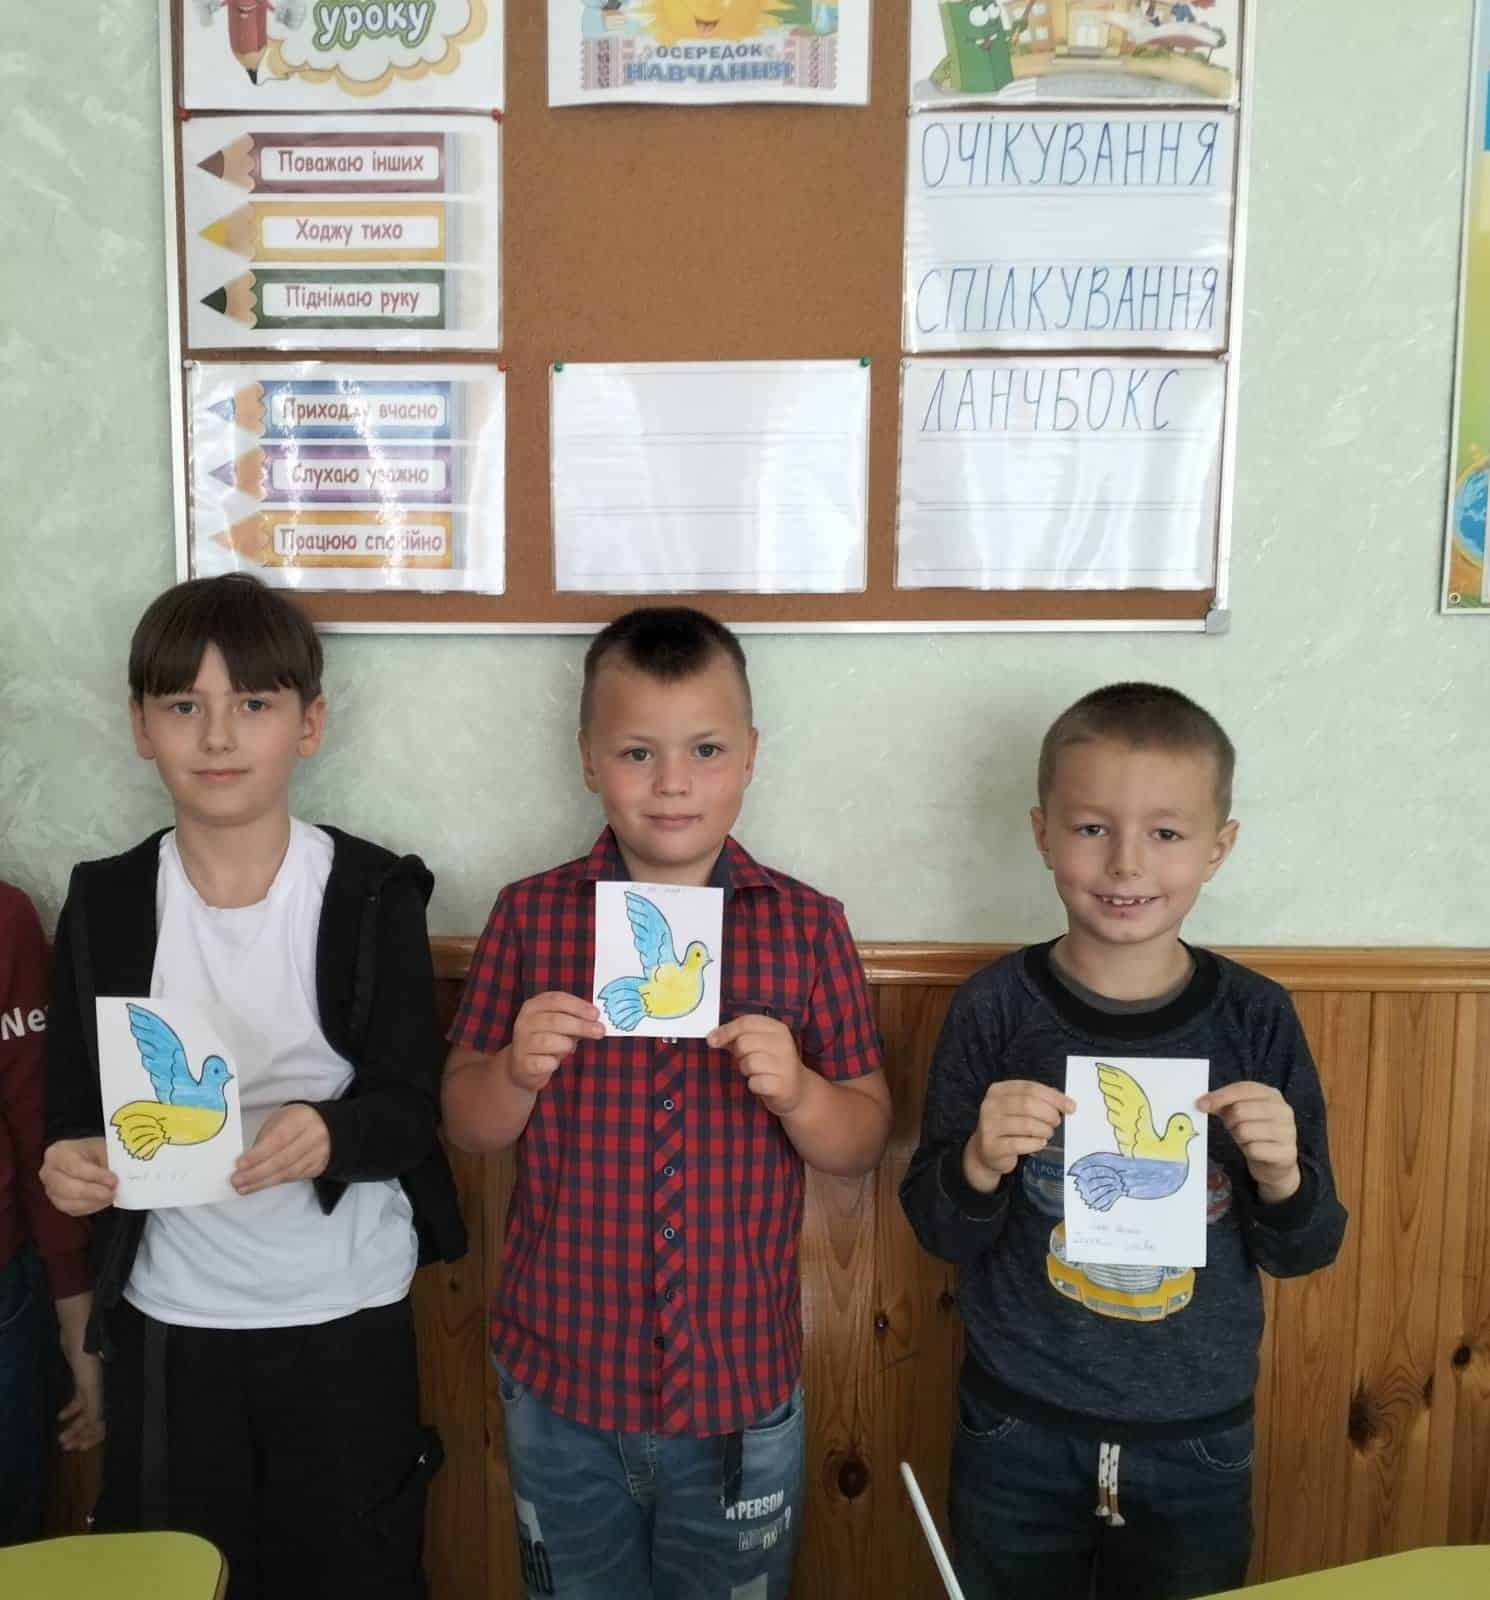 Переяславські школярі відзначили День миру патріотичною ходою та флешмобами